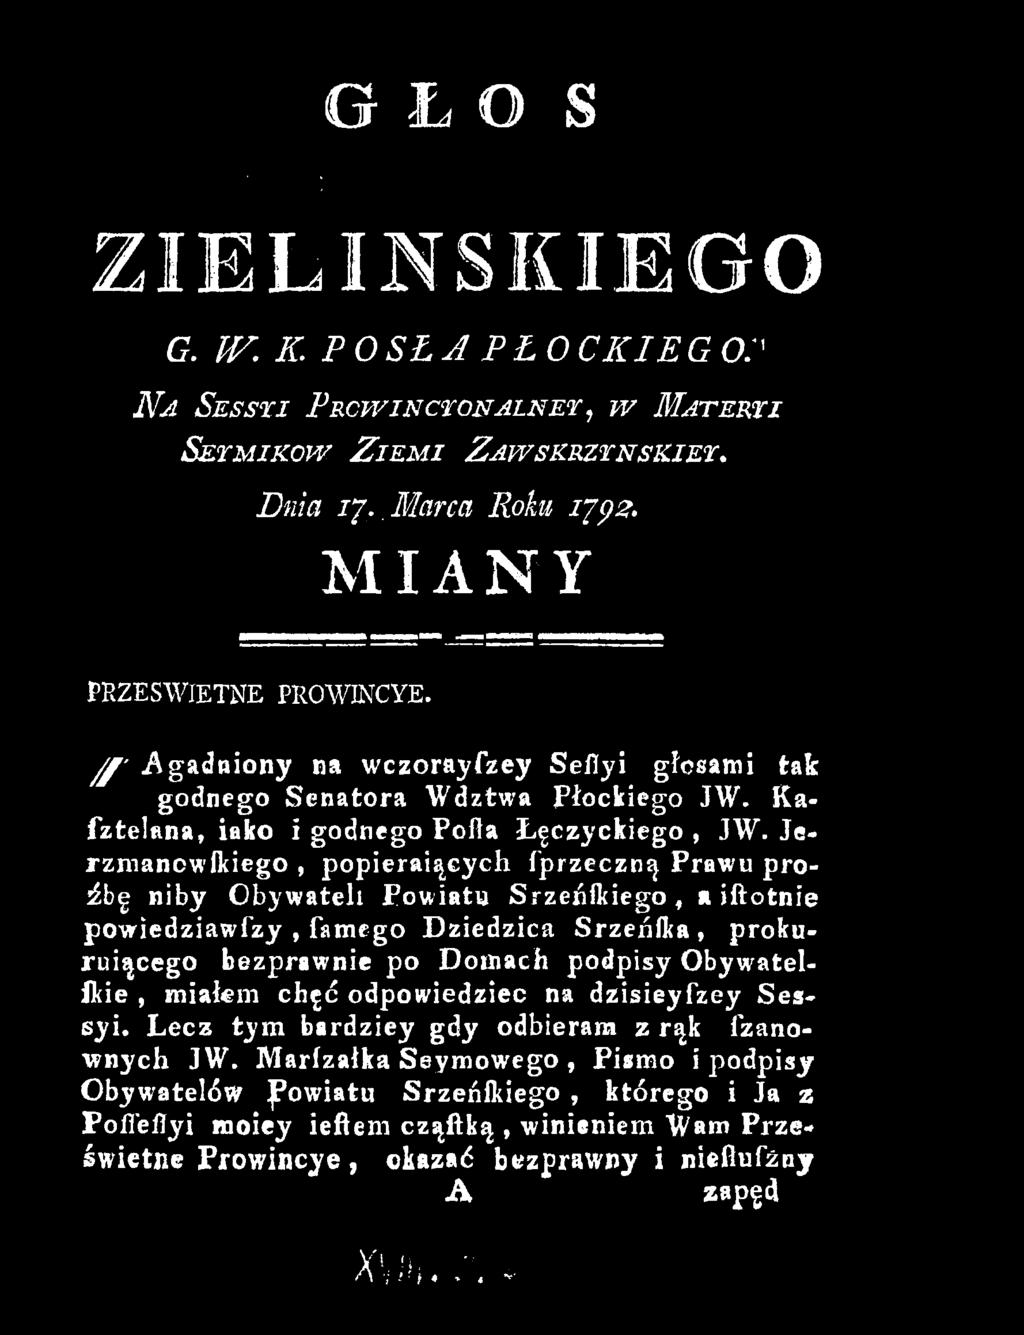 Jerzmancwikiego, popierających fprzeczn^.